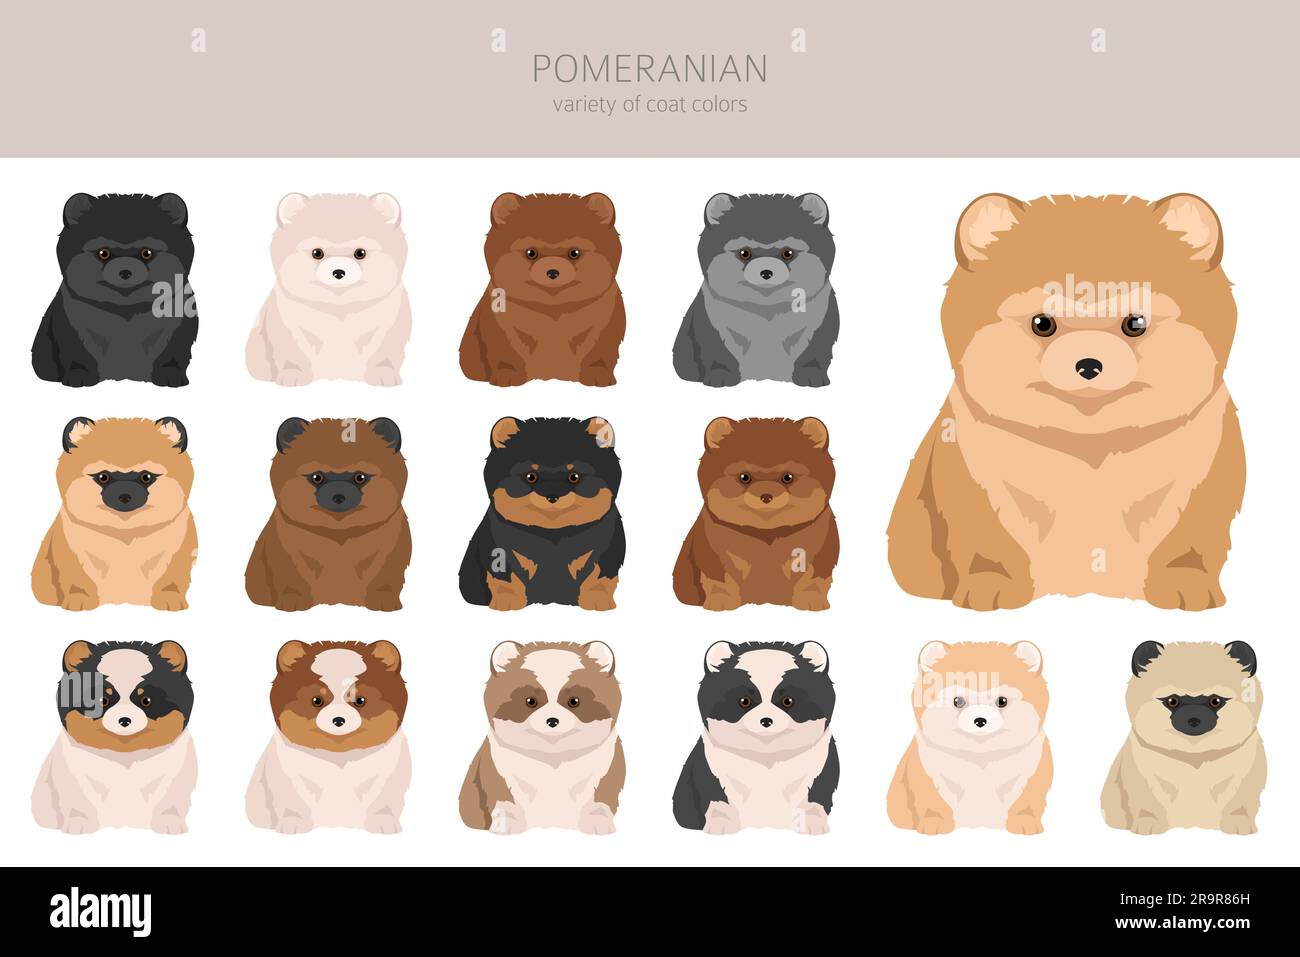 Cuccioli della Pomerania, clipart dei cuccioli dello spitz tedesco. Diverse pose, set di colori del rivestimento. Illustrazione vettoriale Illustrazione Vettoriale